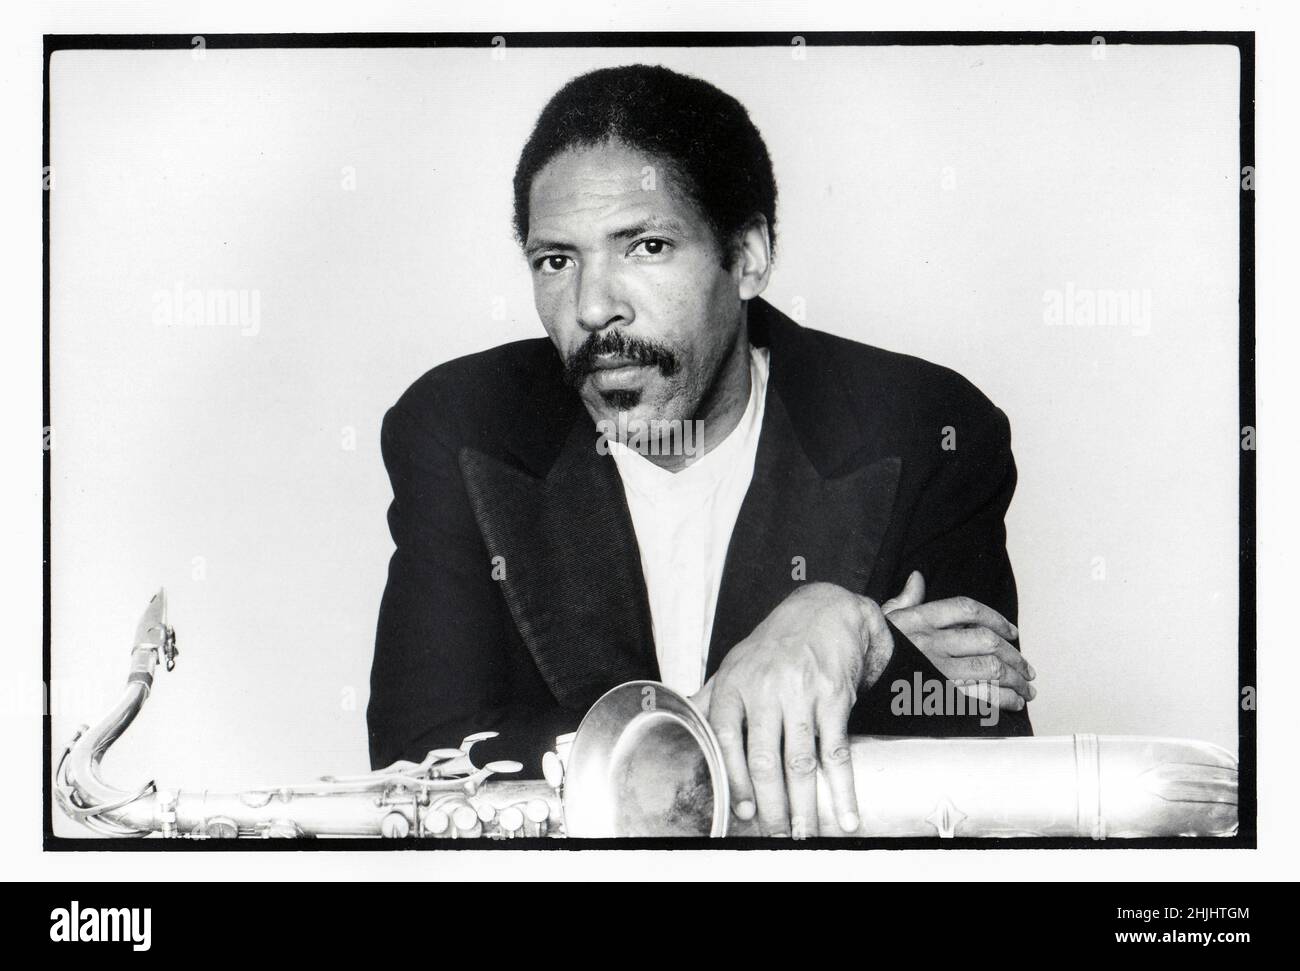 Posierte Porträt des späten Jazz-Komponisten und Tenorsaxophonisten Frank Lowe, aufgenommen 1983 in Brooklyn, New York. Stockfoto